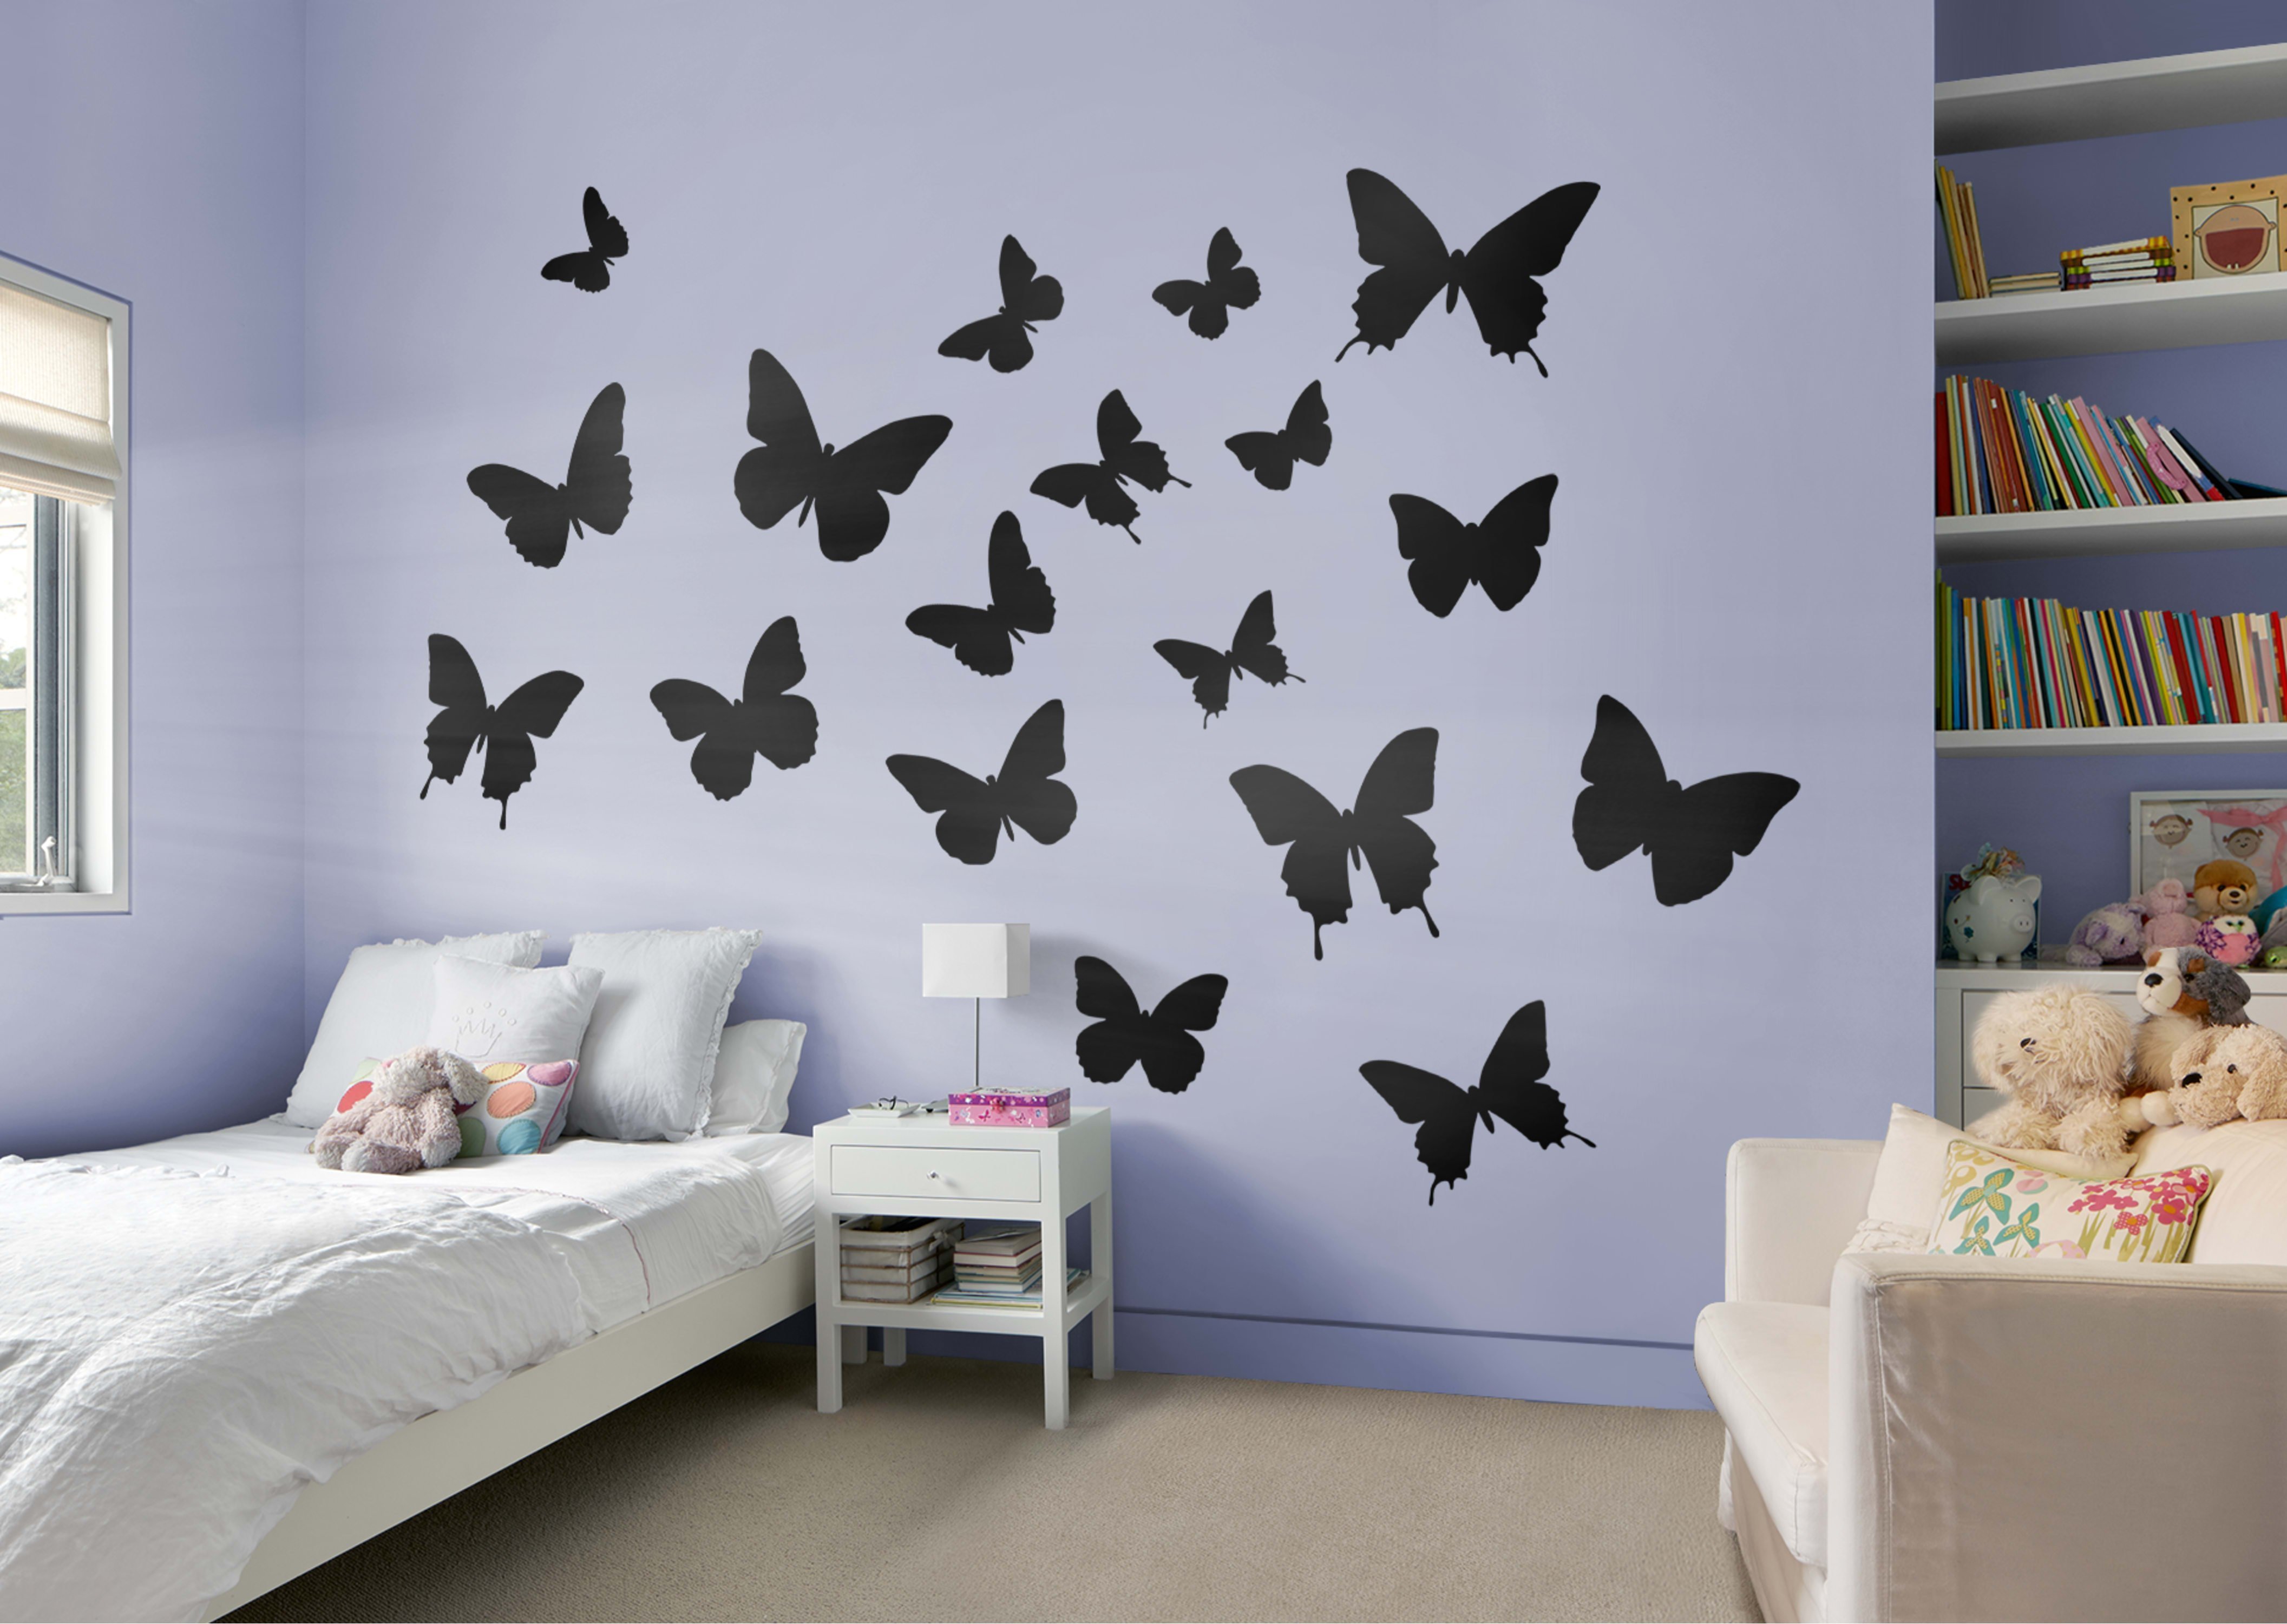 Бабочки клеит. Декор для стен. Бабочки для украшения интерьера. Бабочки на стену своими руками. Бумажные украшения для комнаты.